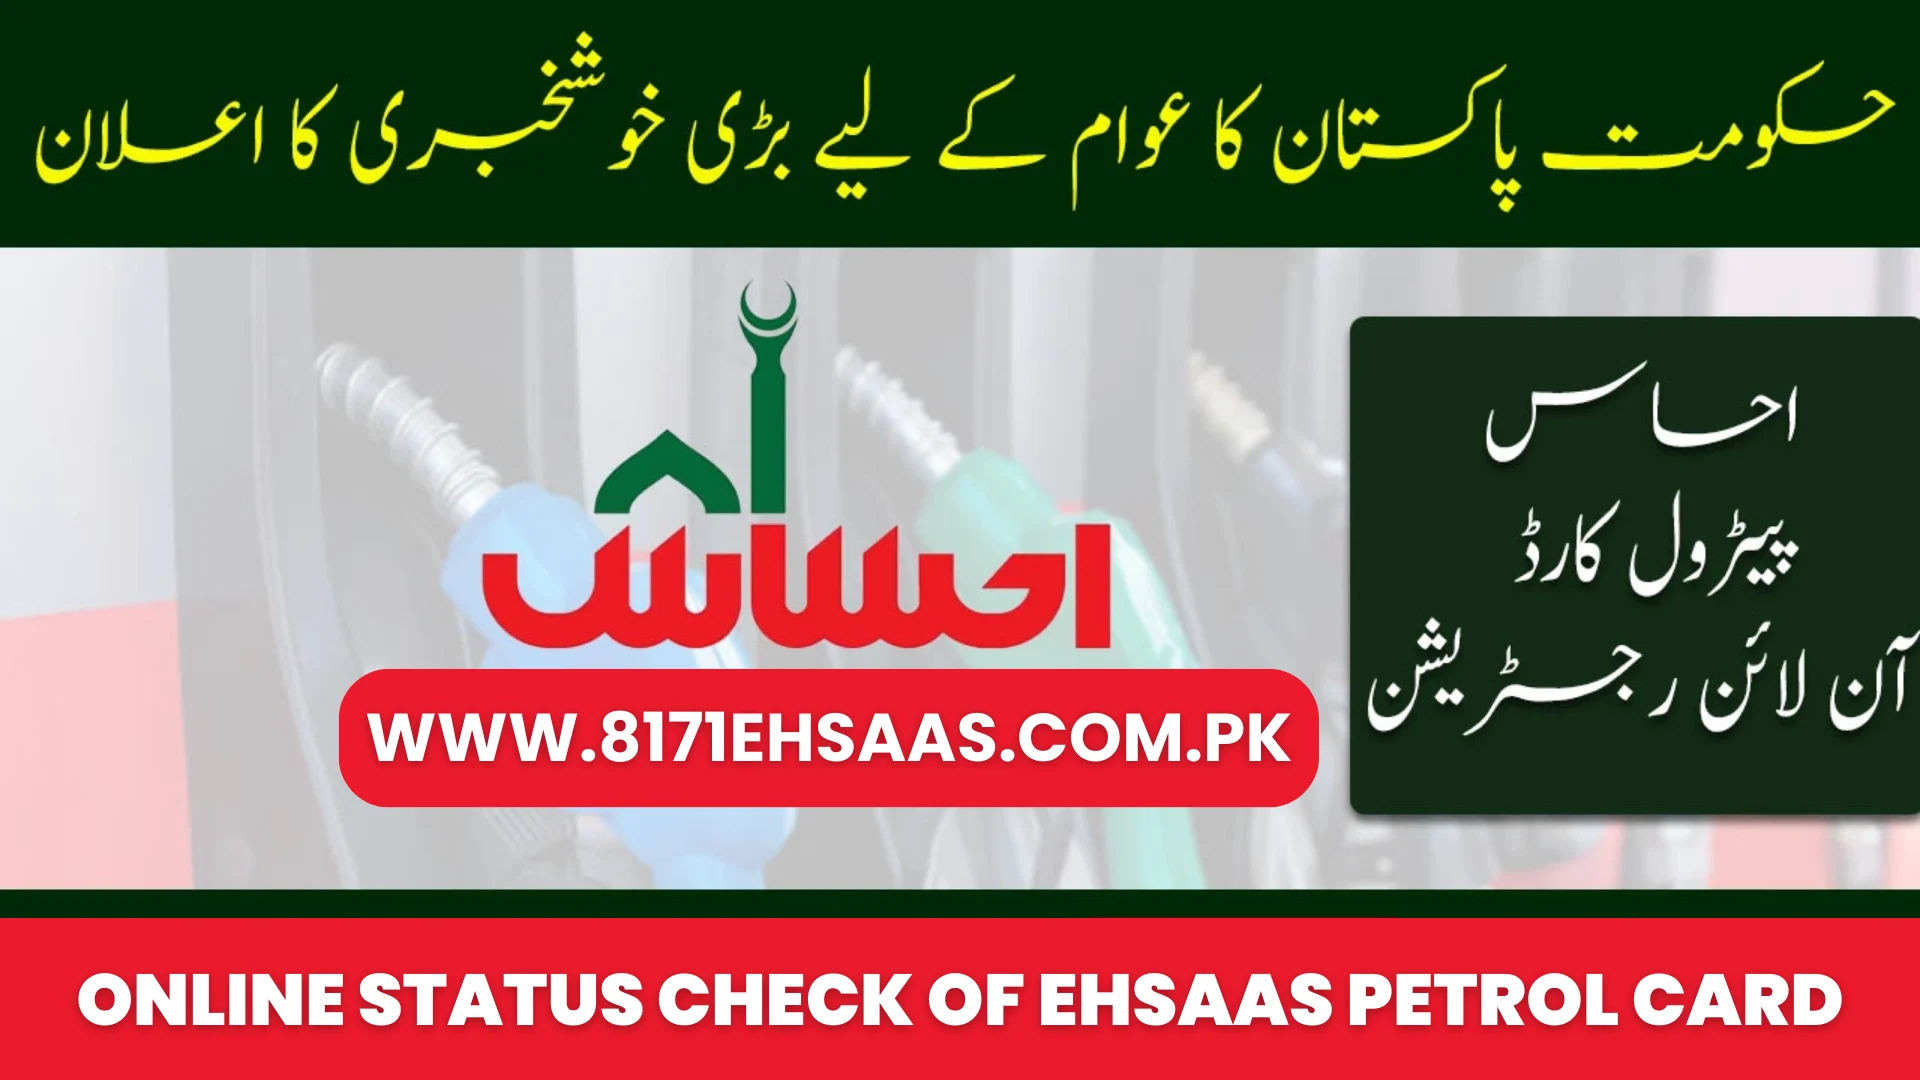 Online Status Check of Ehsaas Petrol Card